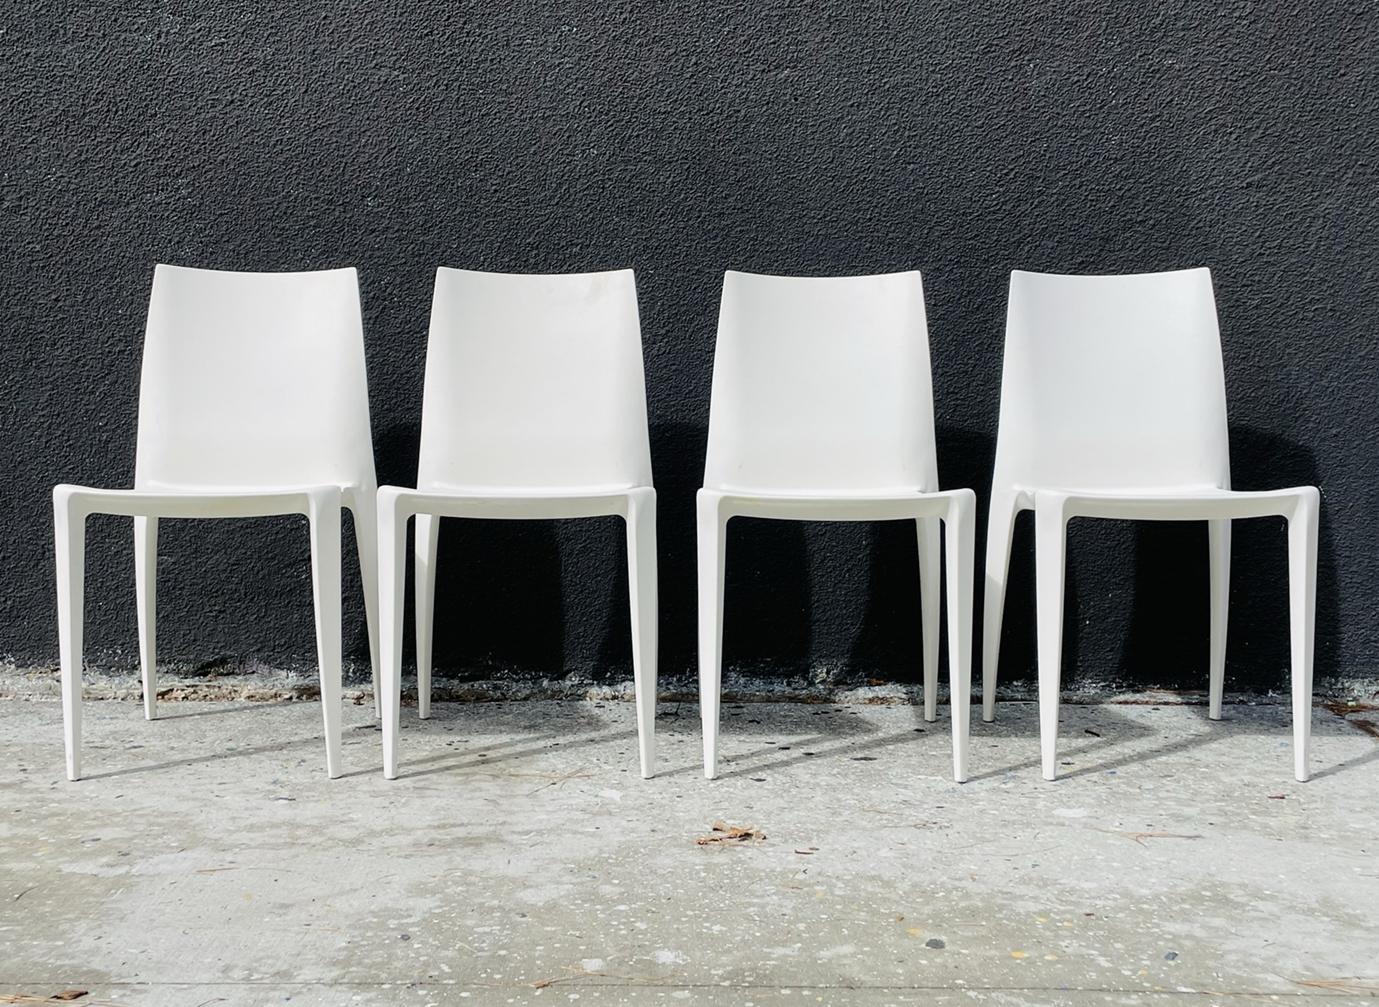 Satz von 4 armlosen Stühlen, entworfen in Italien von Mario Bellini und hergestellt in den USA von Heller.

Für diesen Stuhlentwurf erhielt der berühmte italienische Architekt und Designer Mario Bellini im Jahr 2001 seinen achten Compasso d'Oro.